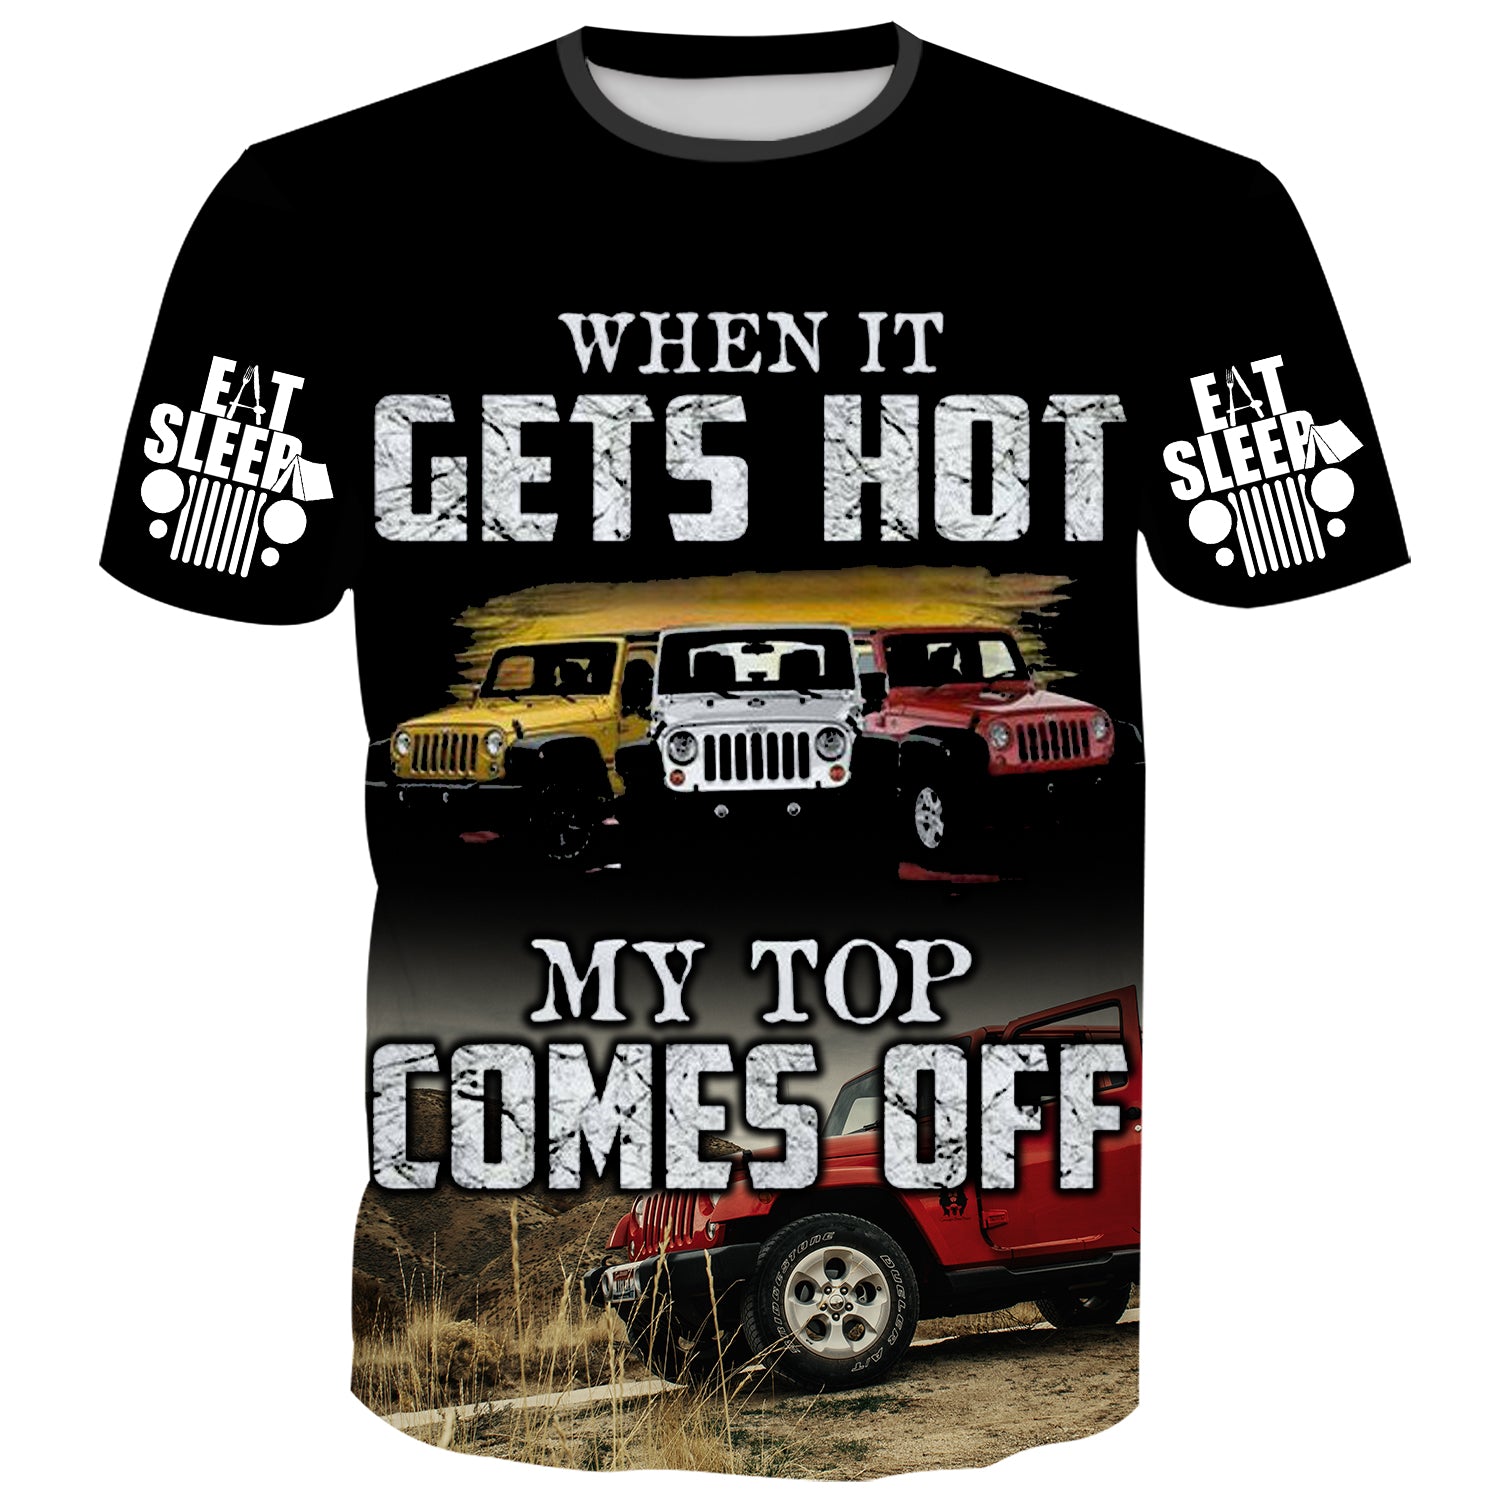 When it Get Hot - T-Shirt